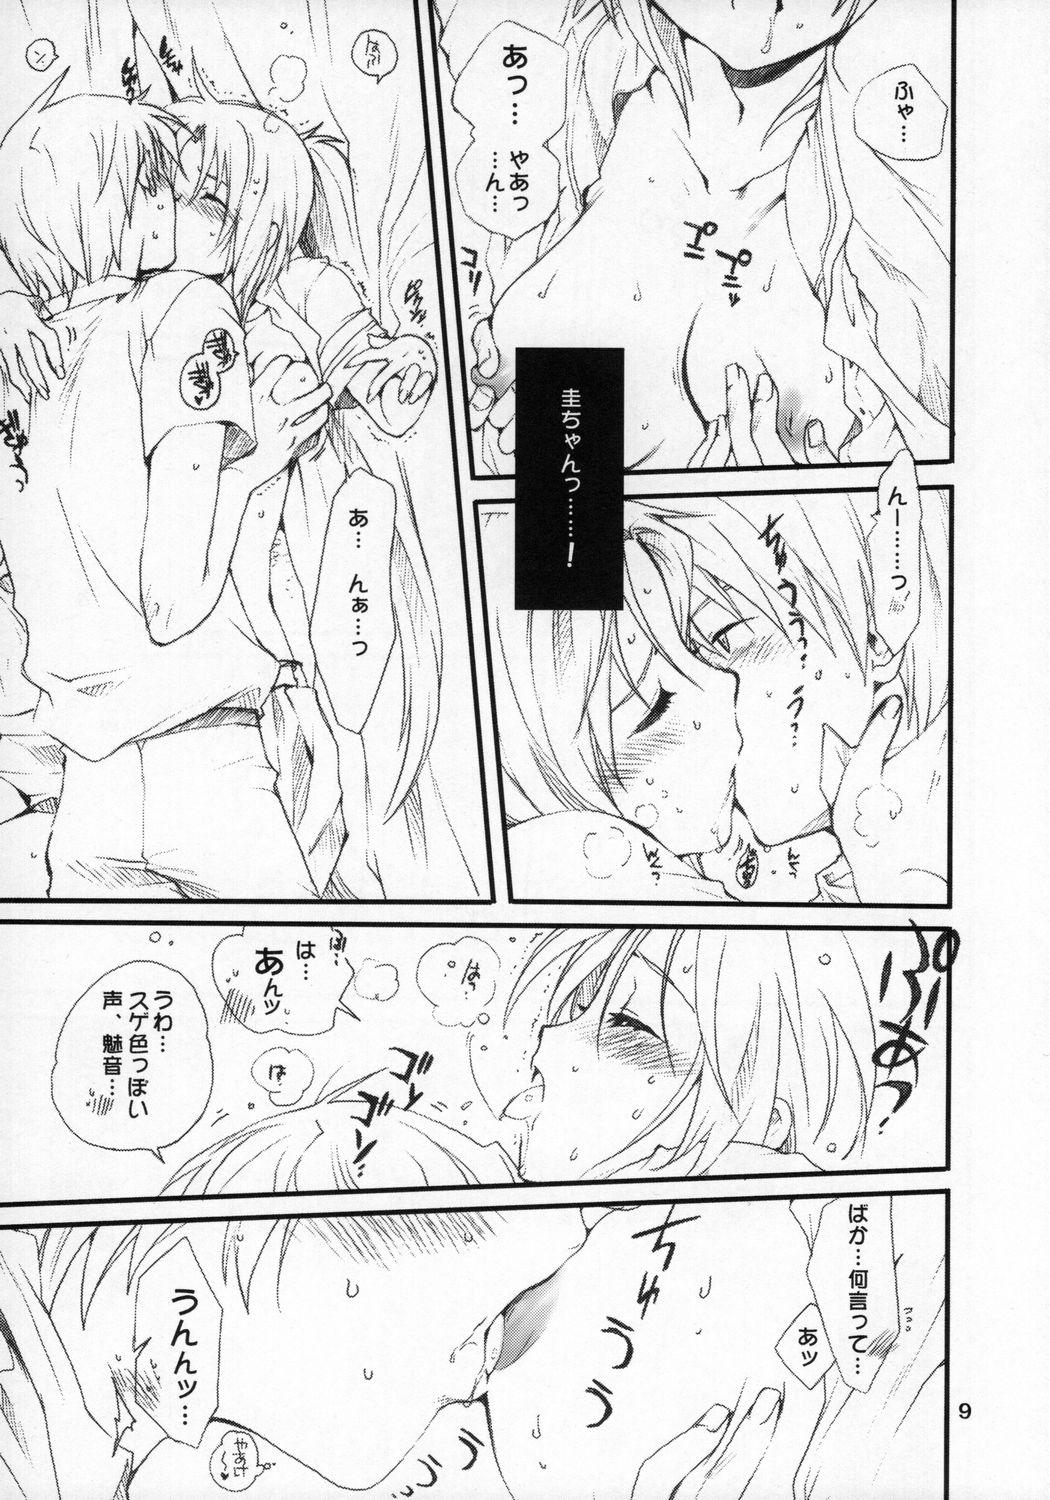 Hardcore Mion-san Ganbaru! - Higurashi no naku koro ni Stockings - Page 8